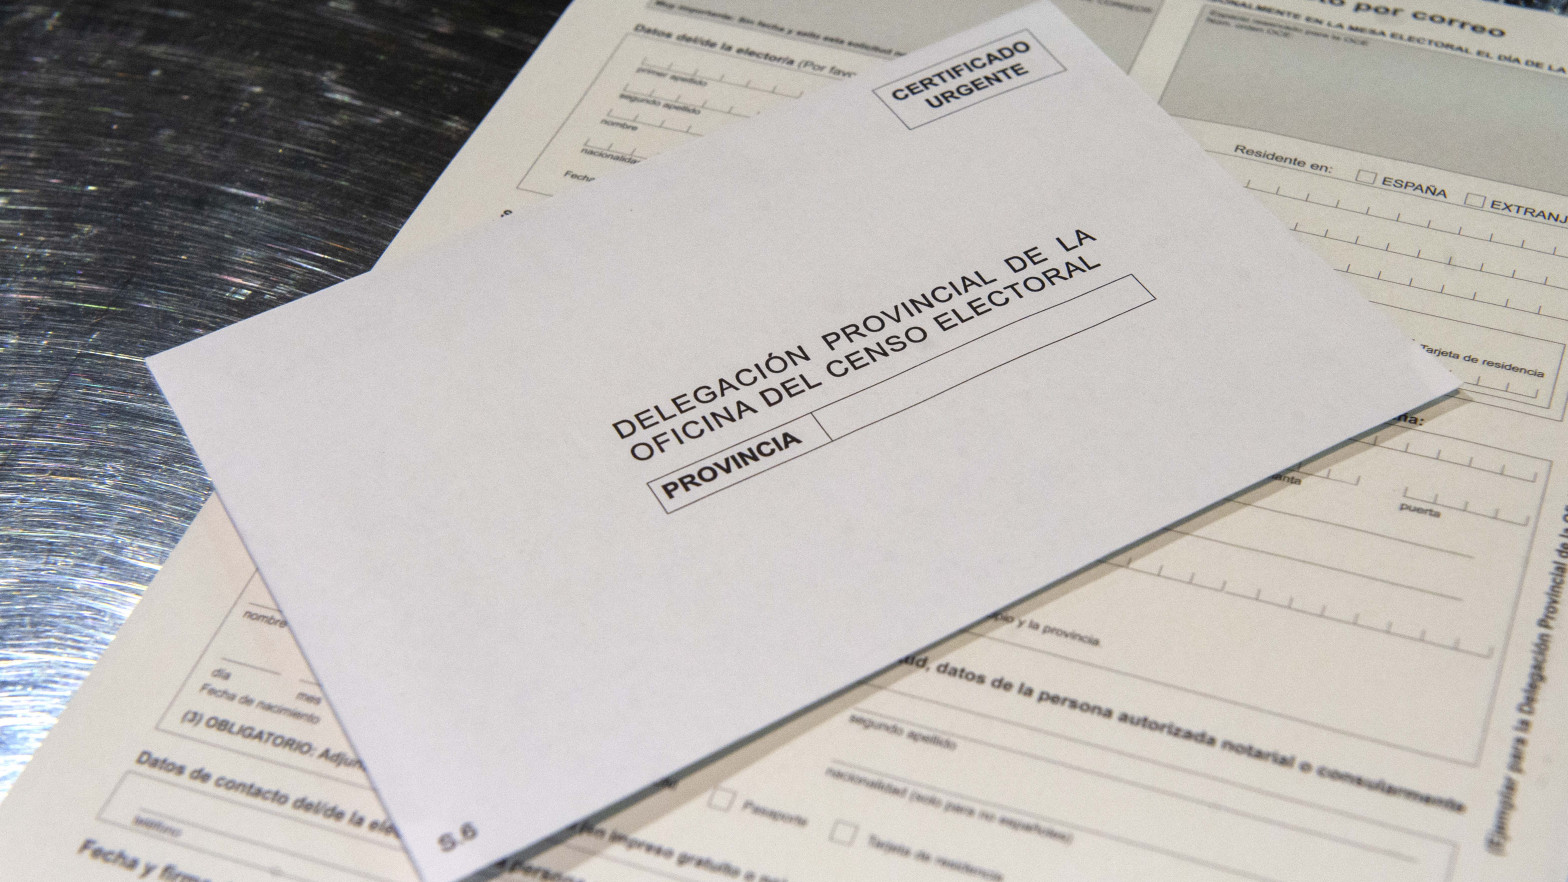 La Junta Electoral Central ordena a Correos que deje de entregar tickets con "votos emitidos" erróneos